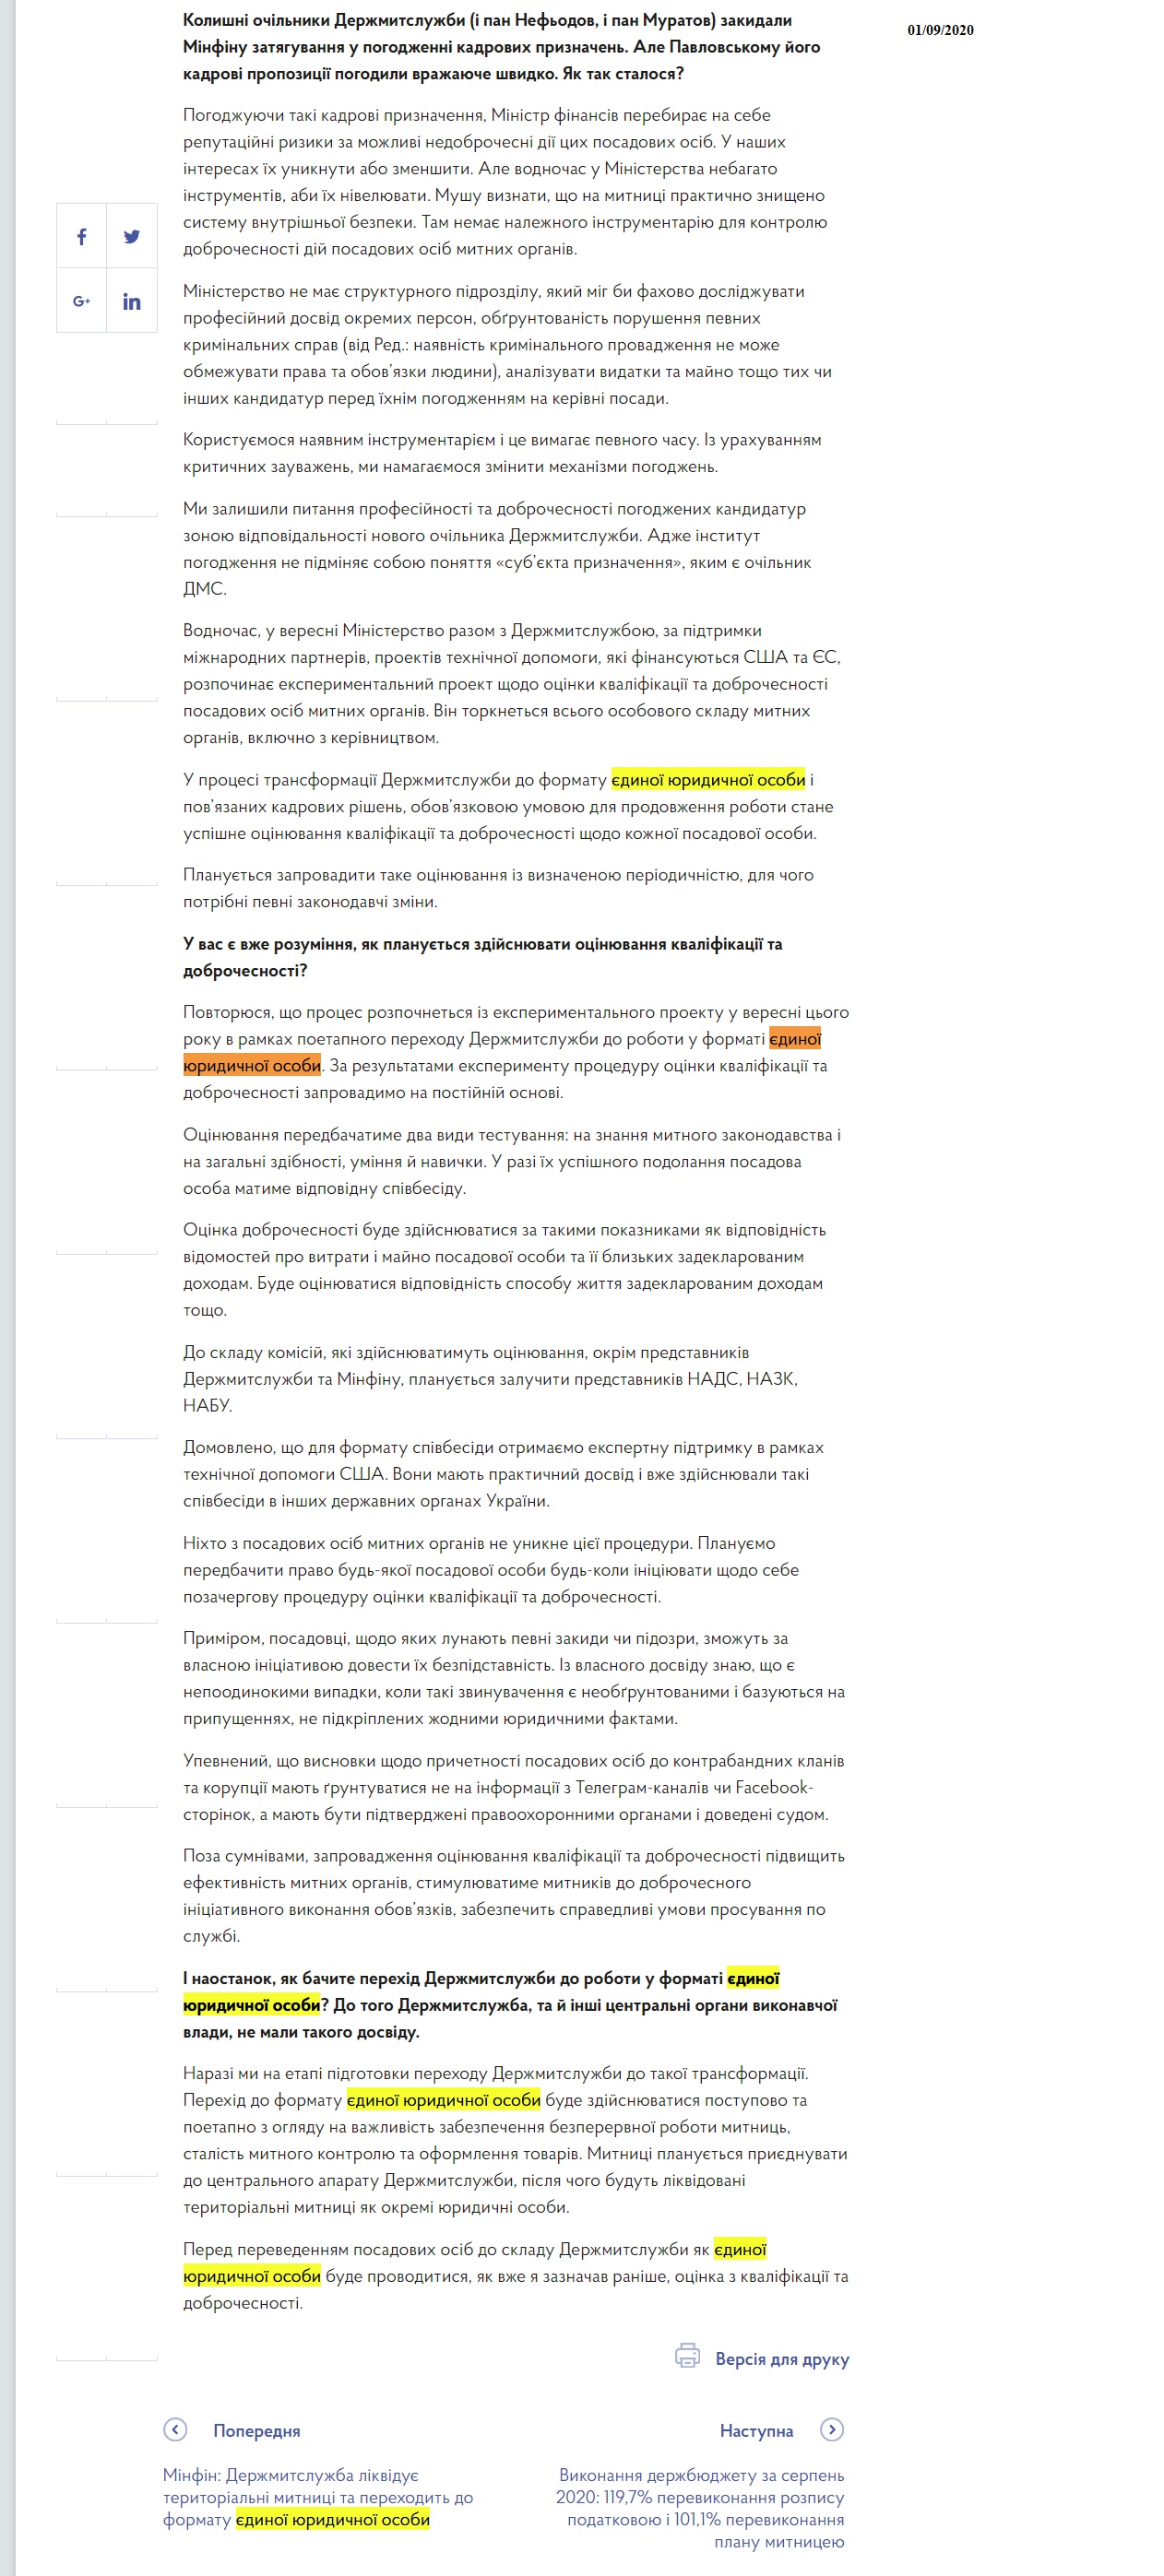 https://www.kmu.gov.ua/news/intervyu-zastupnika-ministra-finansiv-z-pitan-yevropejskoyi-integraciyi-yuriya-draganchuka-dlya-interfaks-ukrayina-01092020